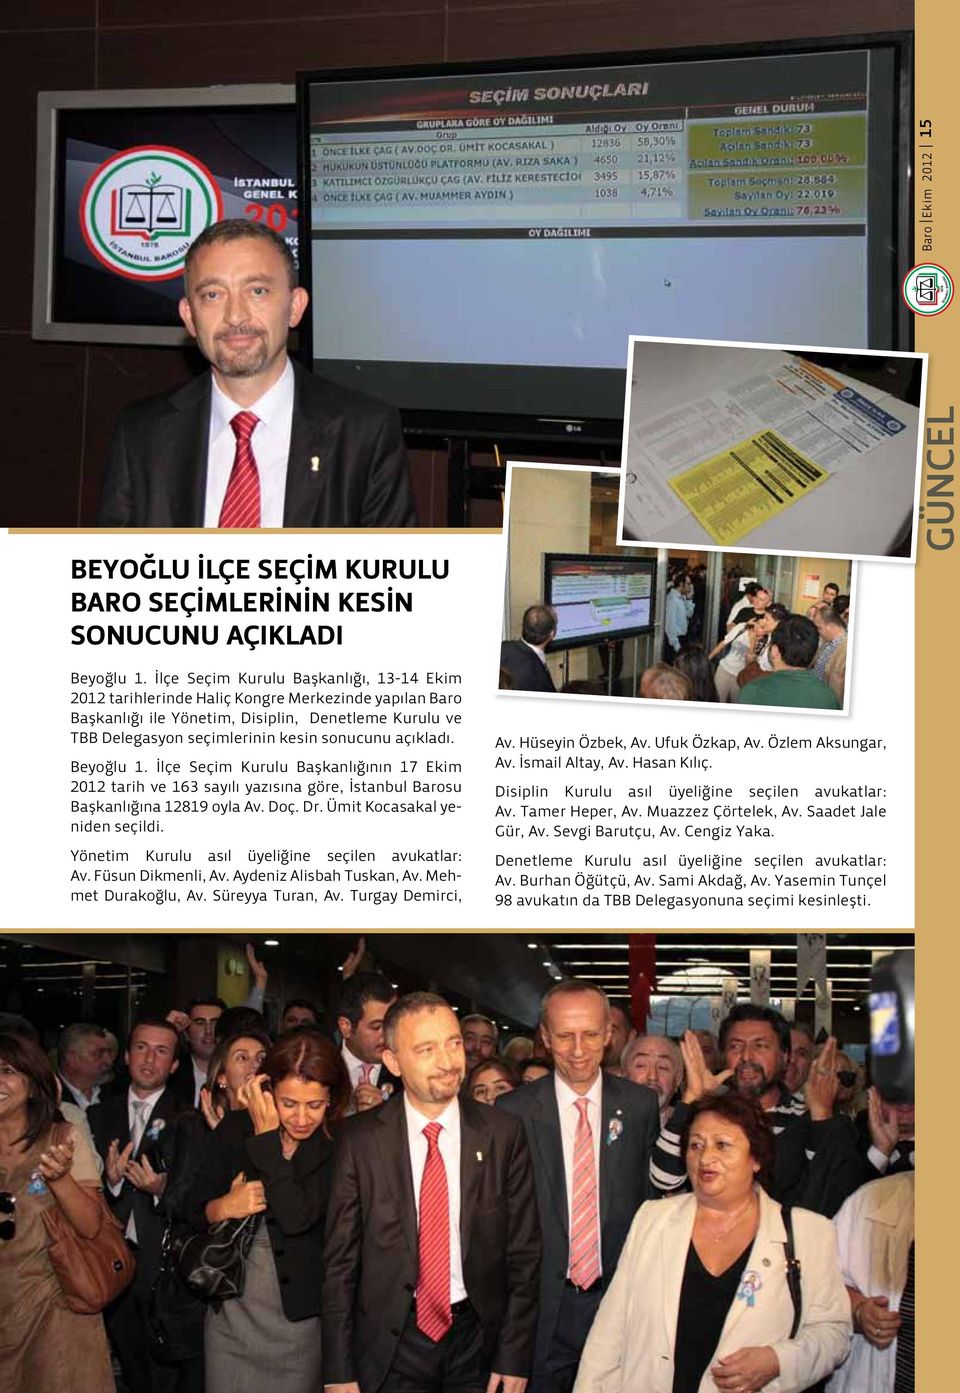 açıkladı. Beyoğlu 1. İlçe Seçim Kurulu Başkanlığının 17 Ekim 2012 tarih ve 163 sayılı yazısına göre, İstanbul Barosu Başkanlığına 12819 oyla Av. Doç. Dr. Ümit Kocasakal yeniden seçildi.